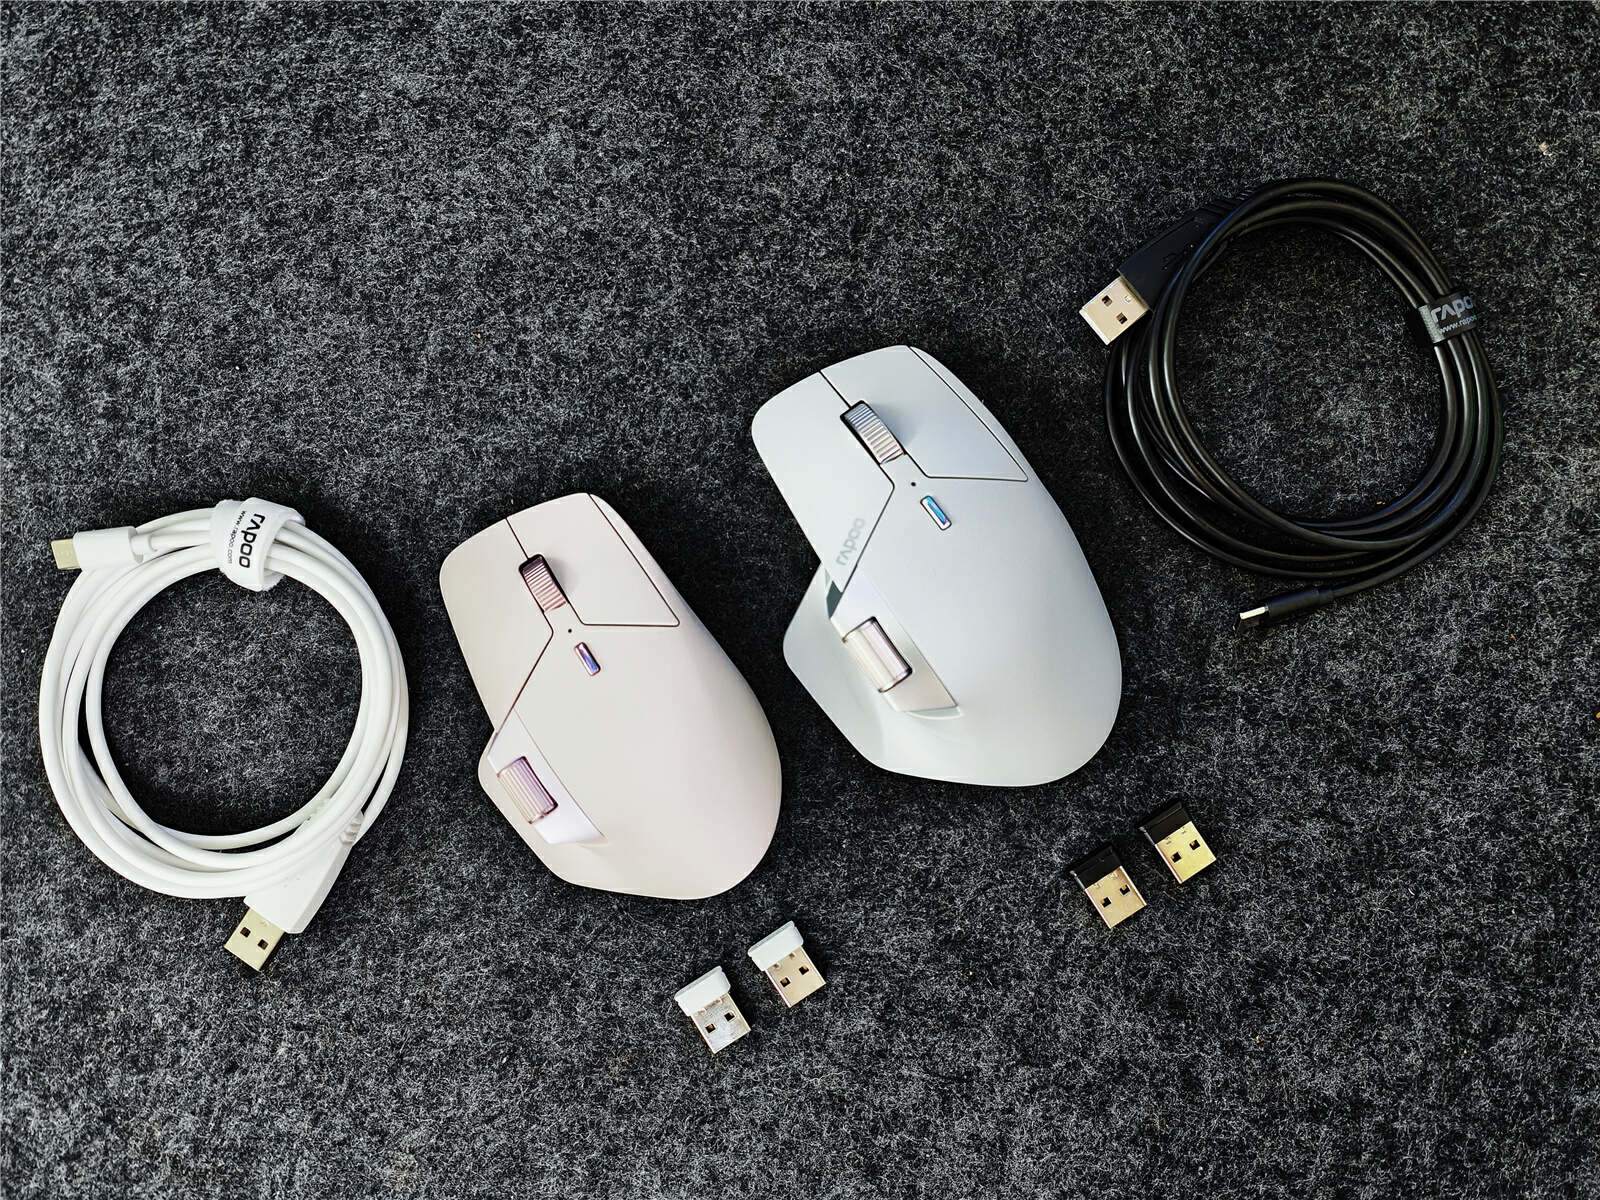 雷柏mt760鼠标评测:多终端无线跨屏,商务办公的细腻与实用性!